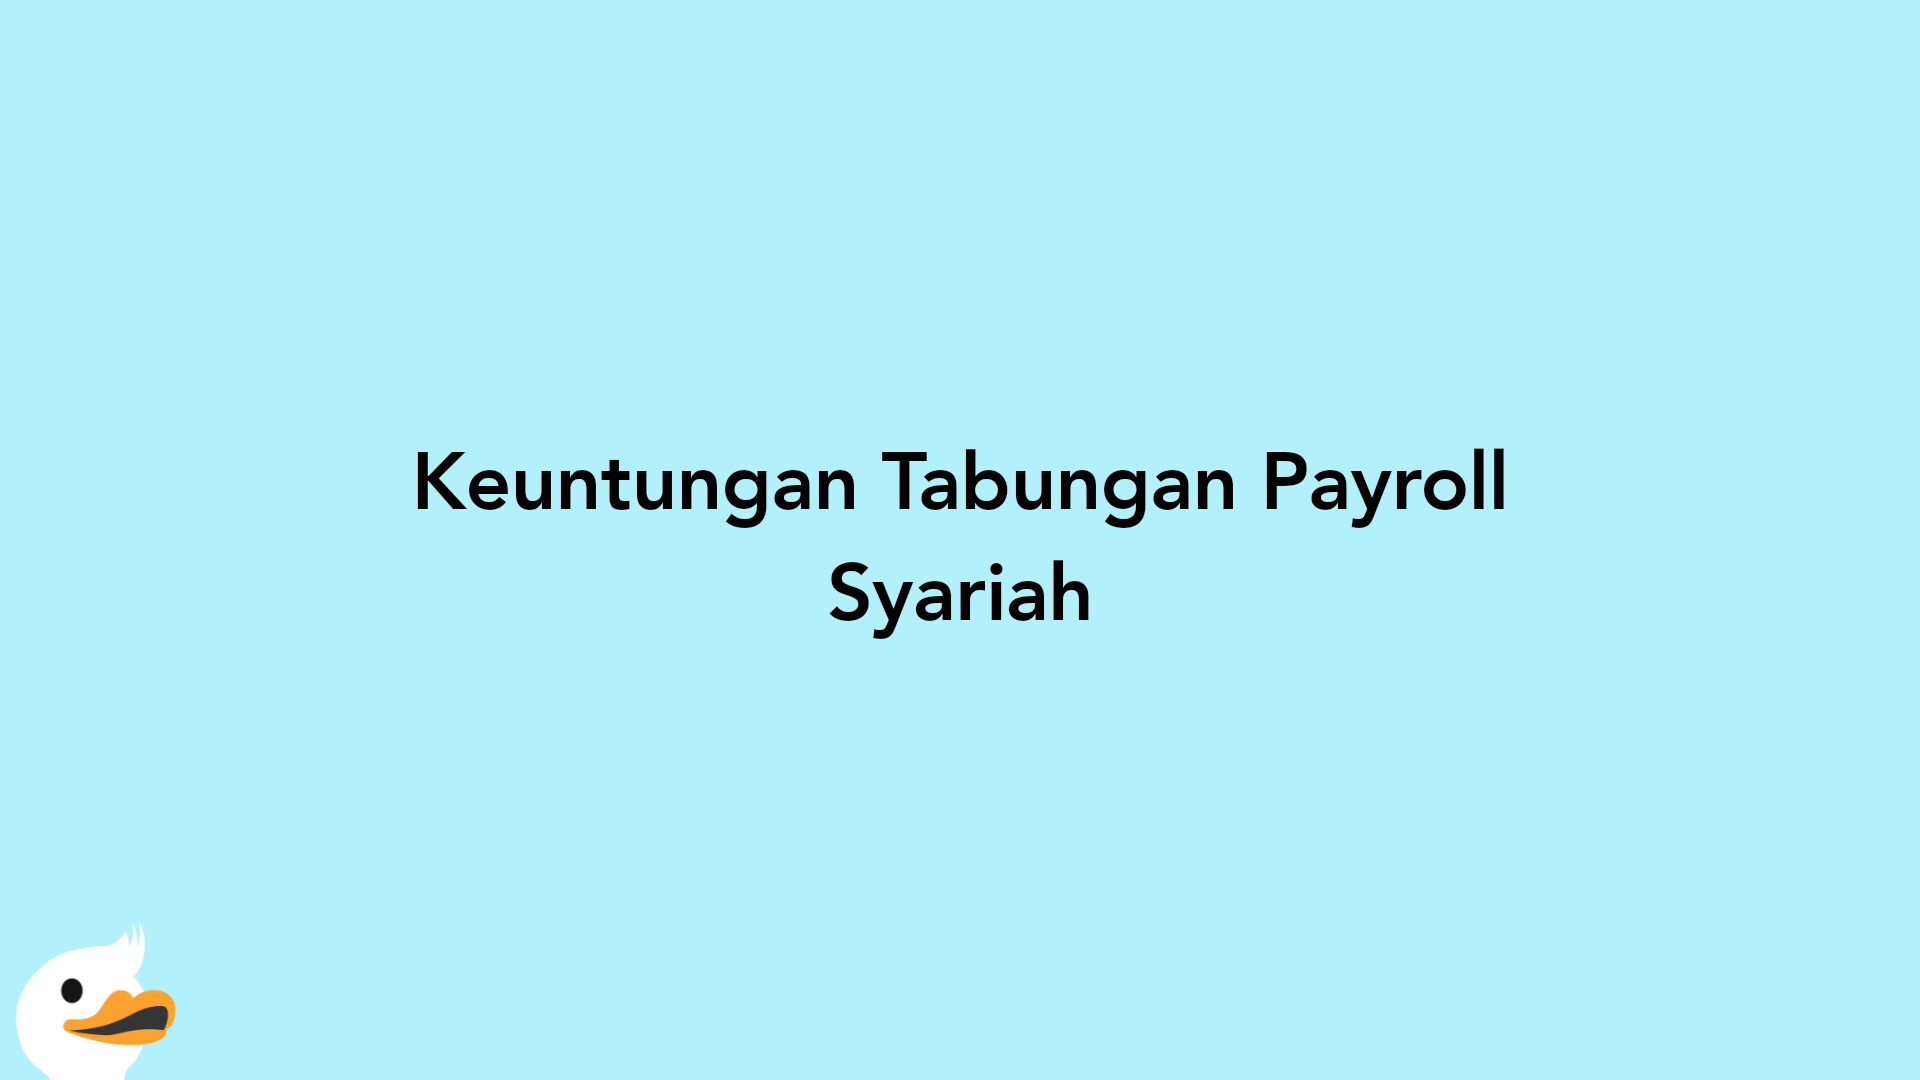 Keuntungan Tabungan Payroll Syariah